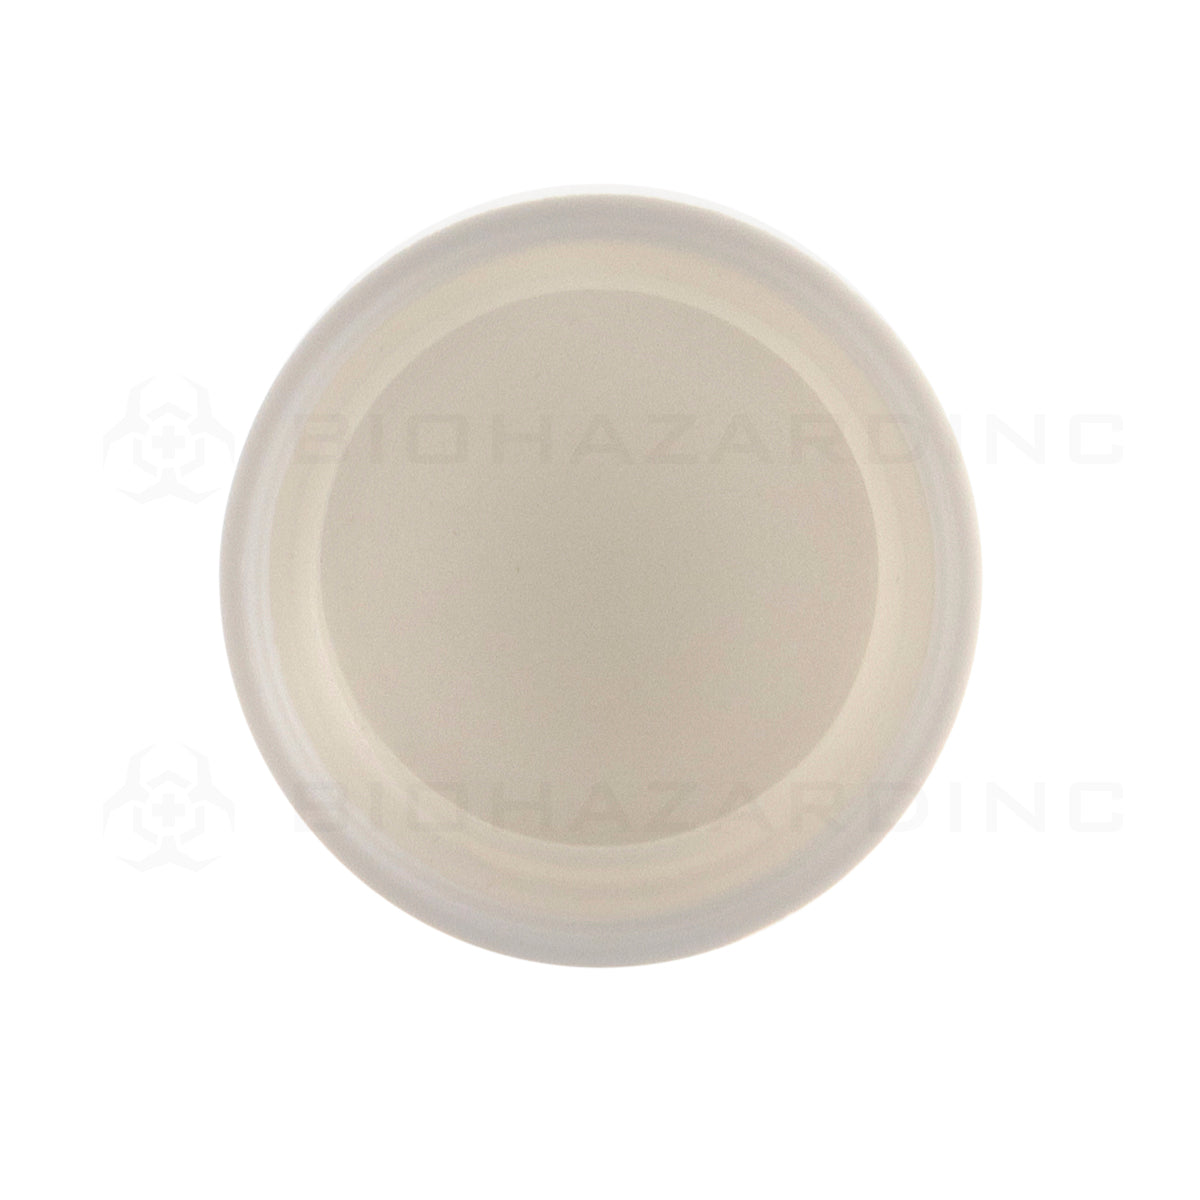 Child Resistant Cap | Plastic Cap | 24mm - Matte White - 144 Count Child Resistant Cap Biohazard Inc   